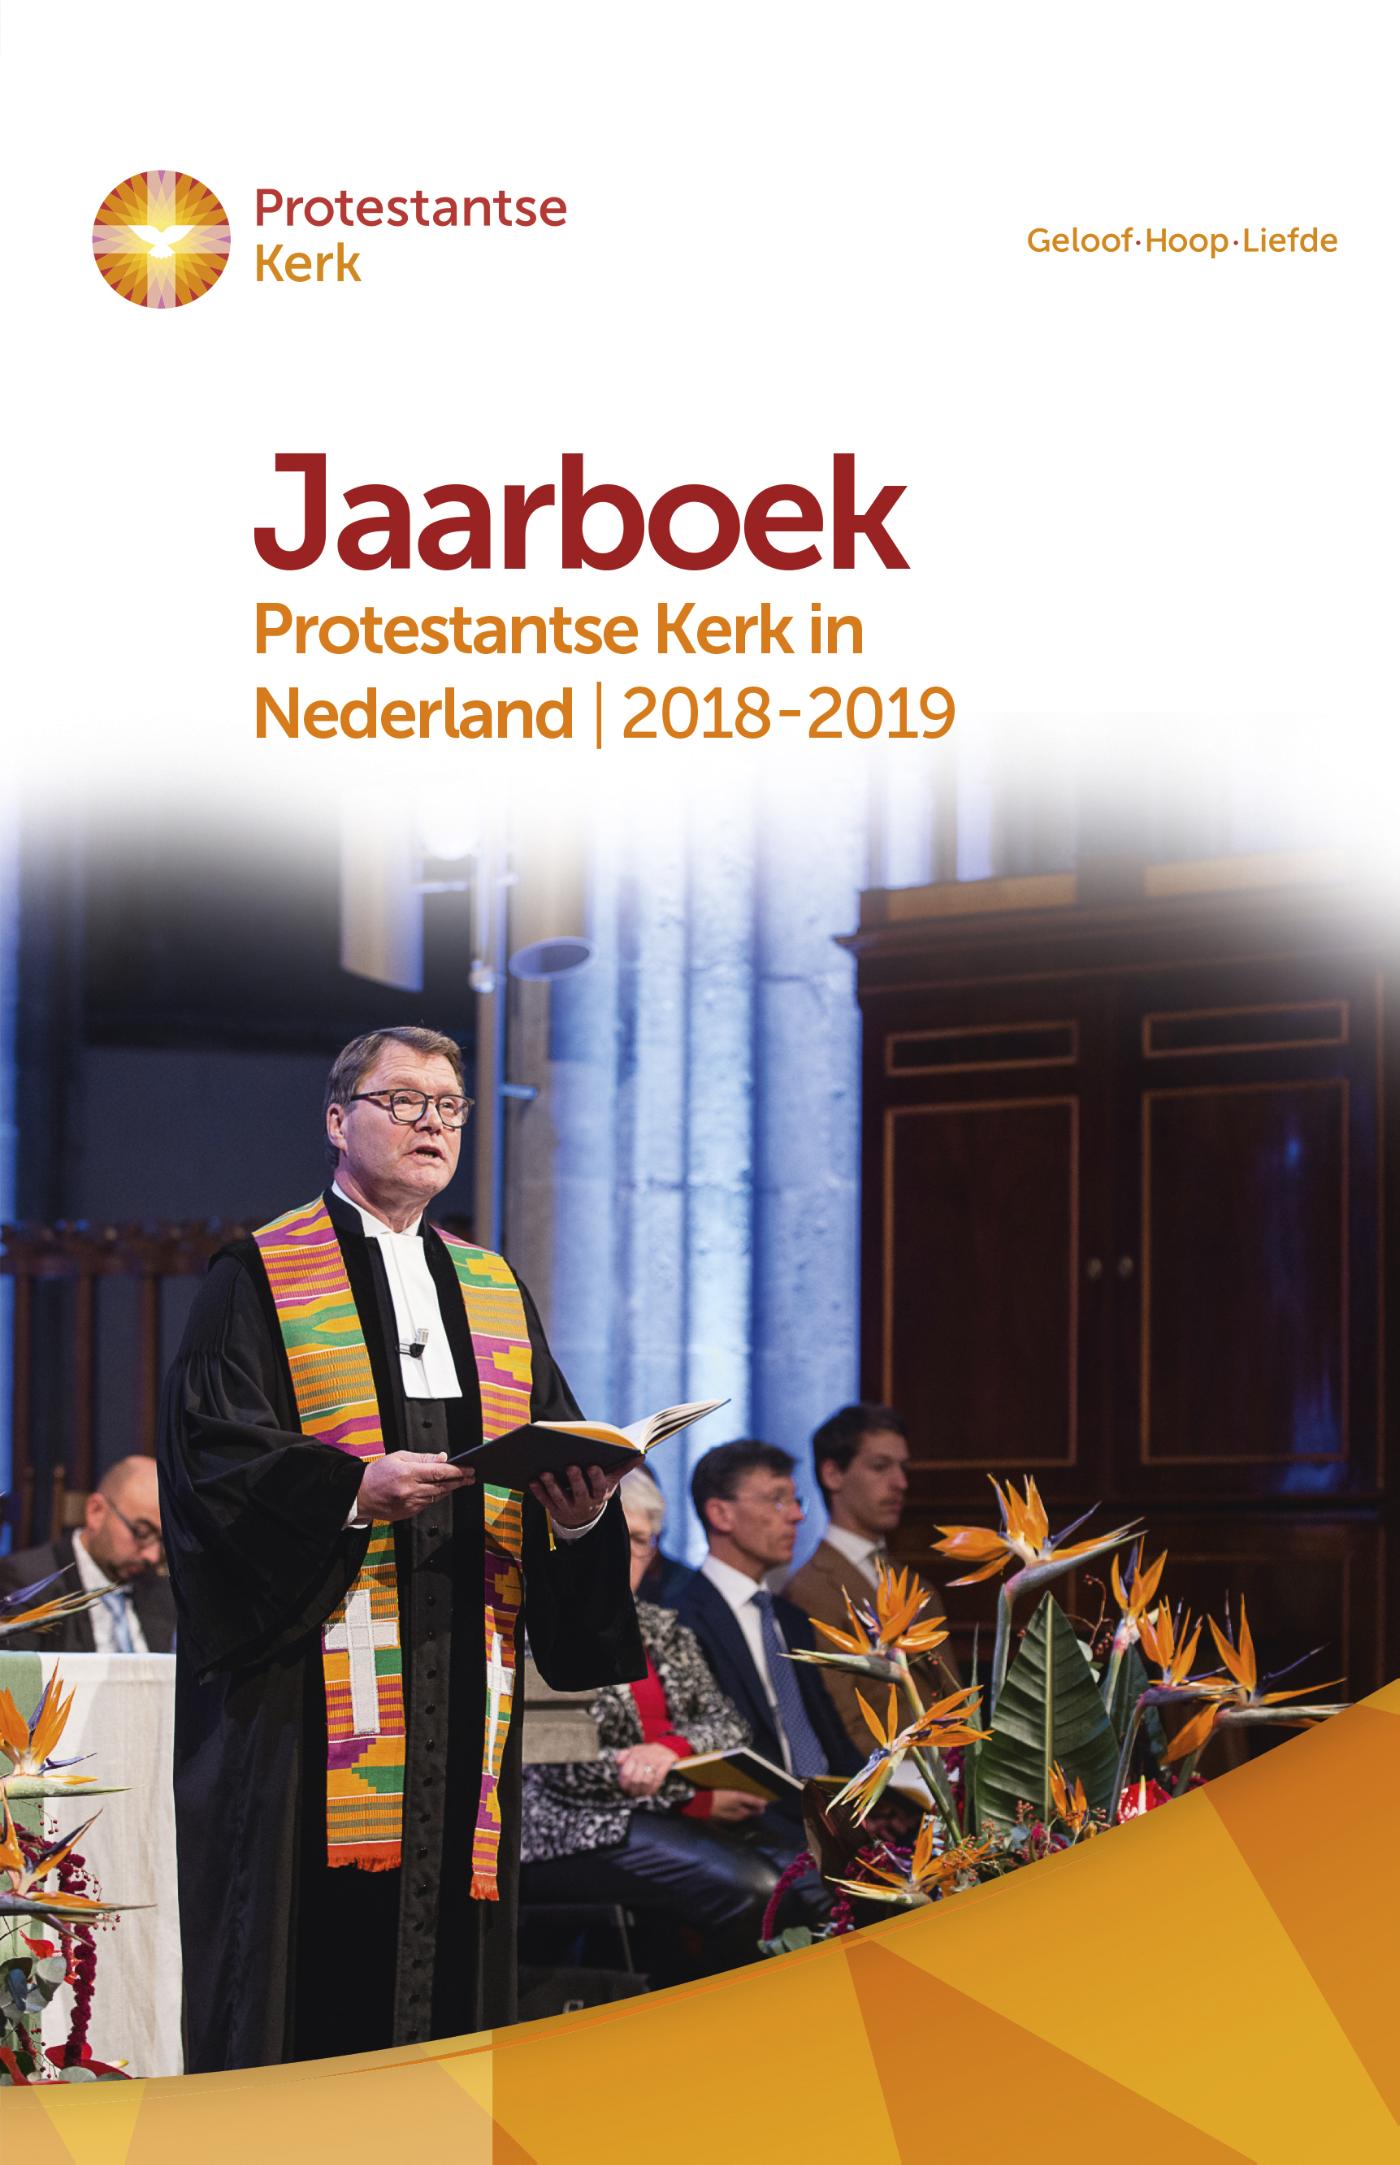 Jaarboek Protestantse Kerk in Nederland 2018-2019